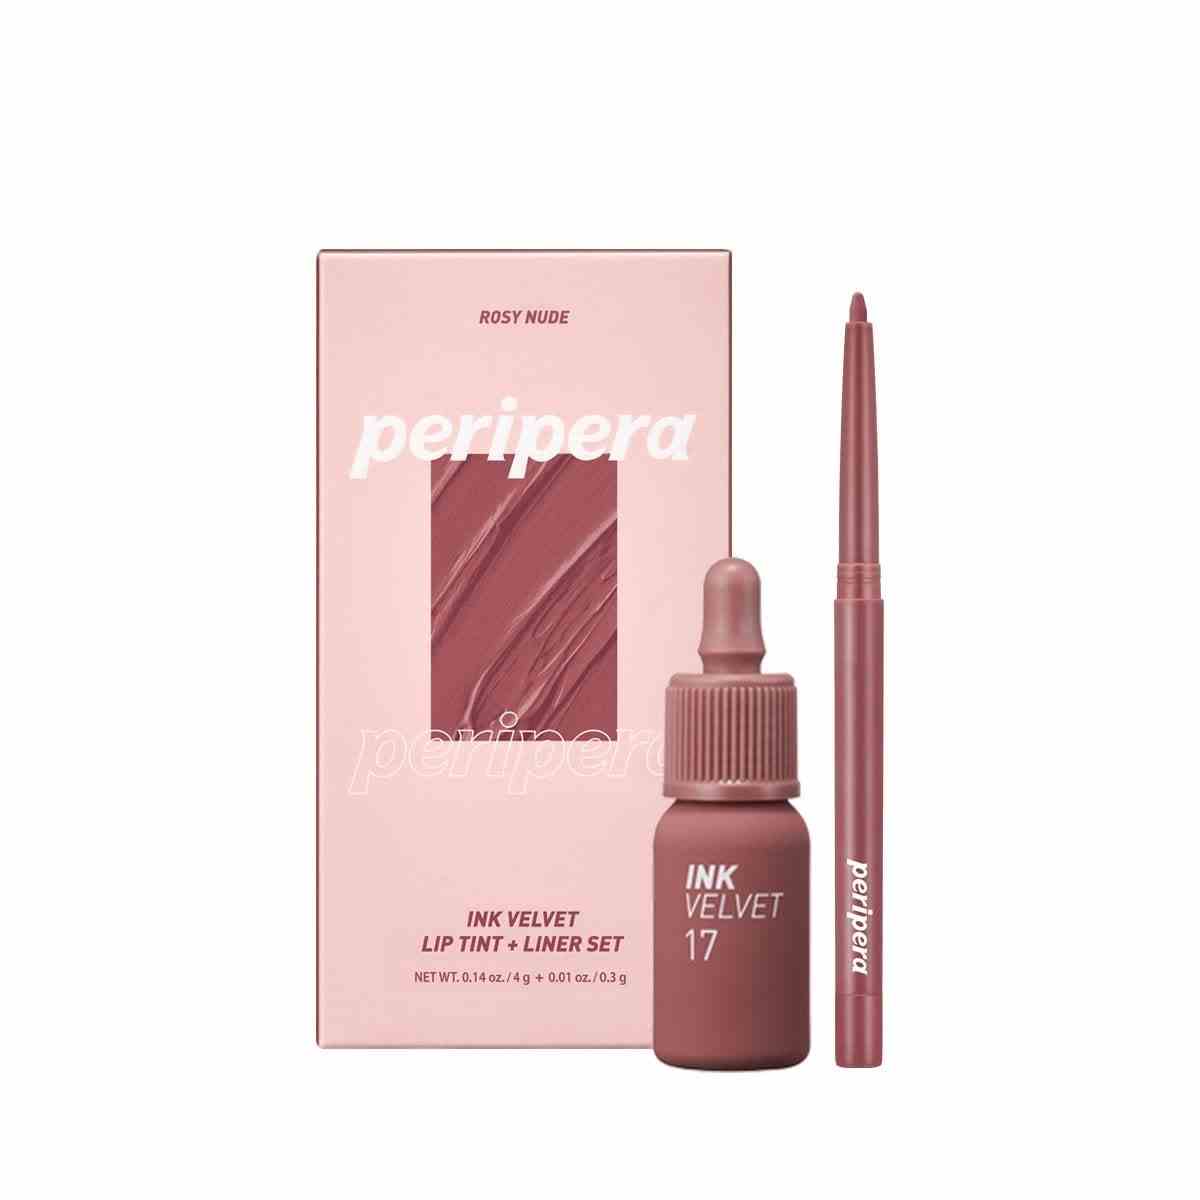 Eine rosa Schachtel Peripera Ink the Velvet Lip Tint + Liner Set in Rosy Nude auf weißem Hintergrund